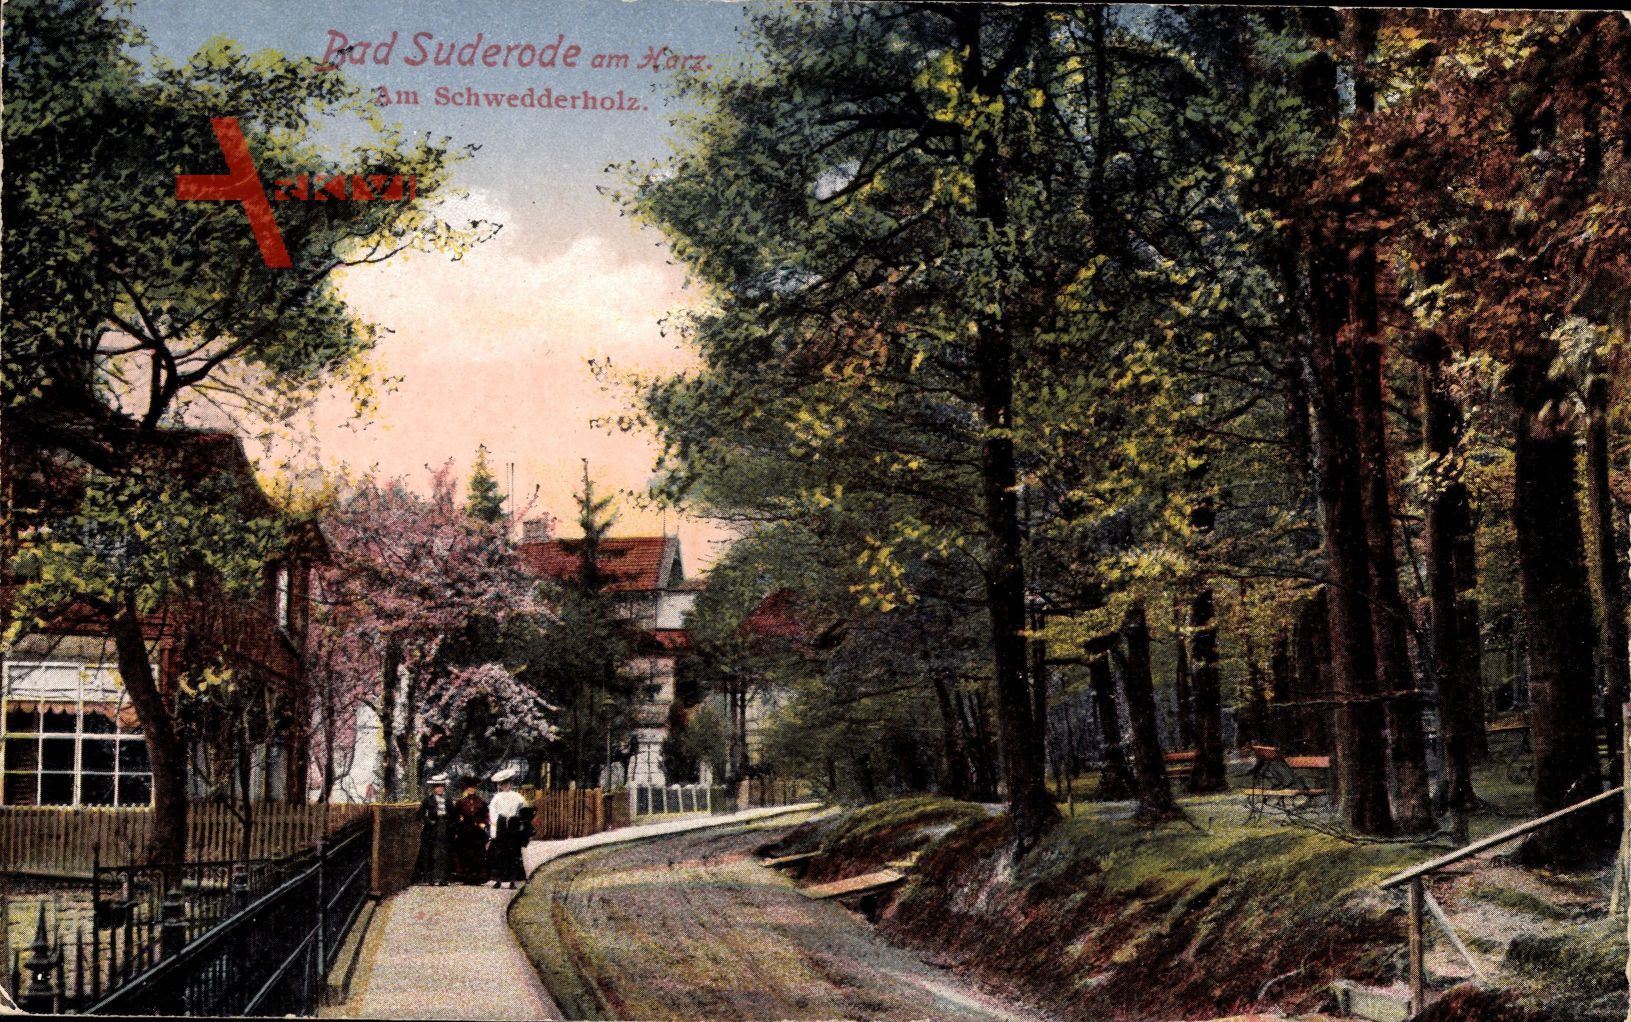 Bad Suderode im Harz, Partie am Schwedderholz, Häuser, Treppe, Frauen